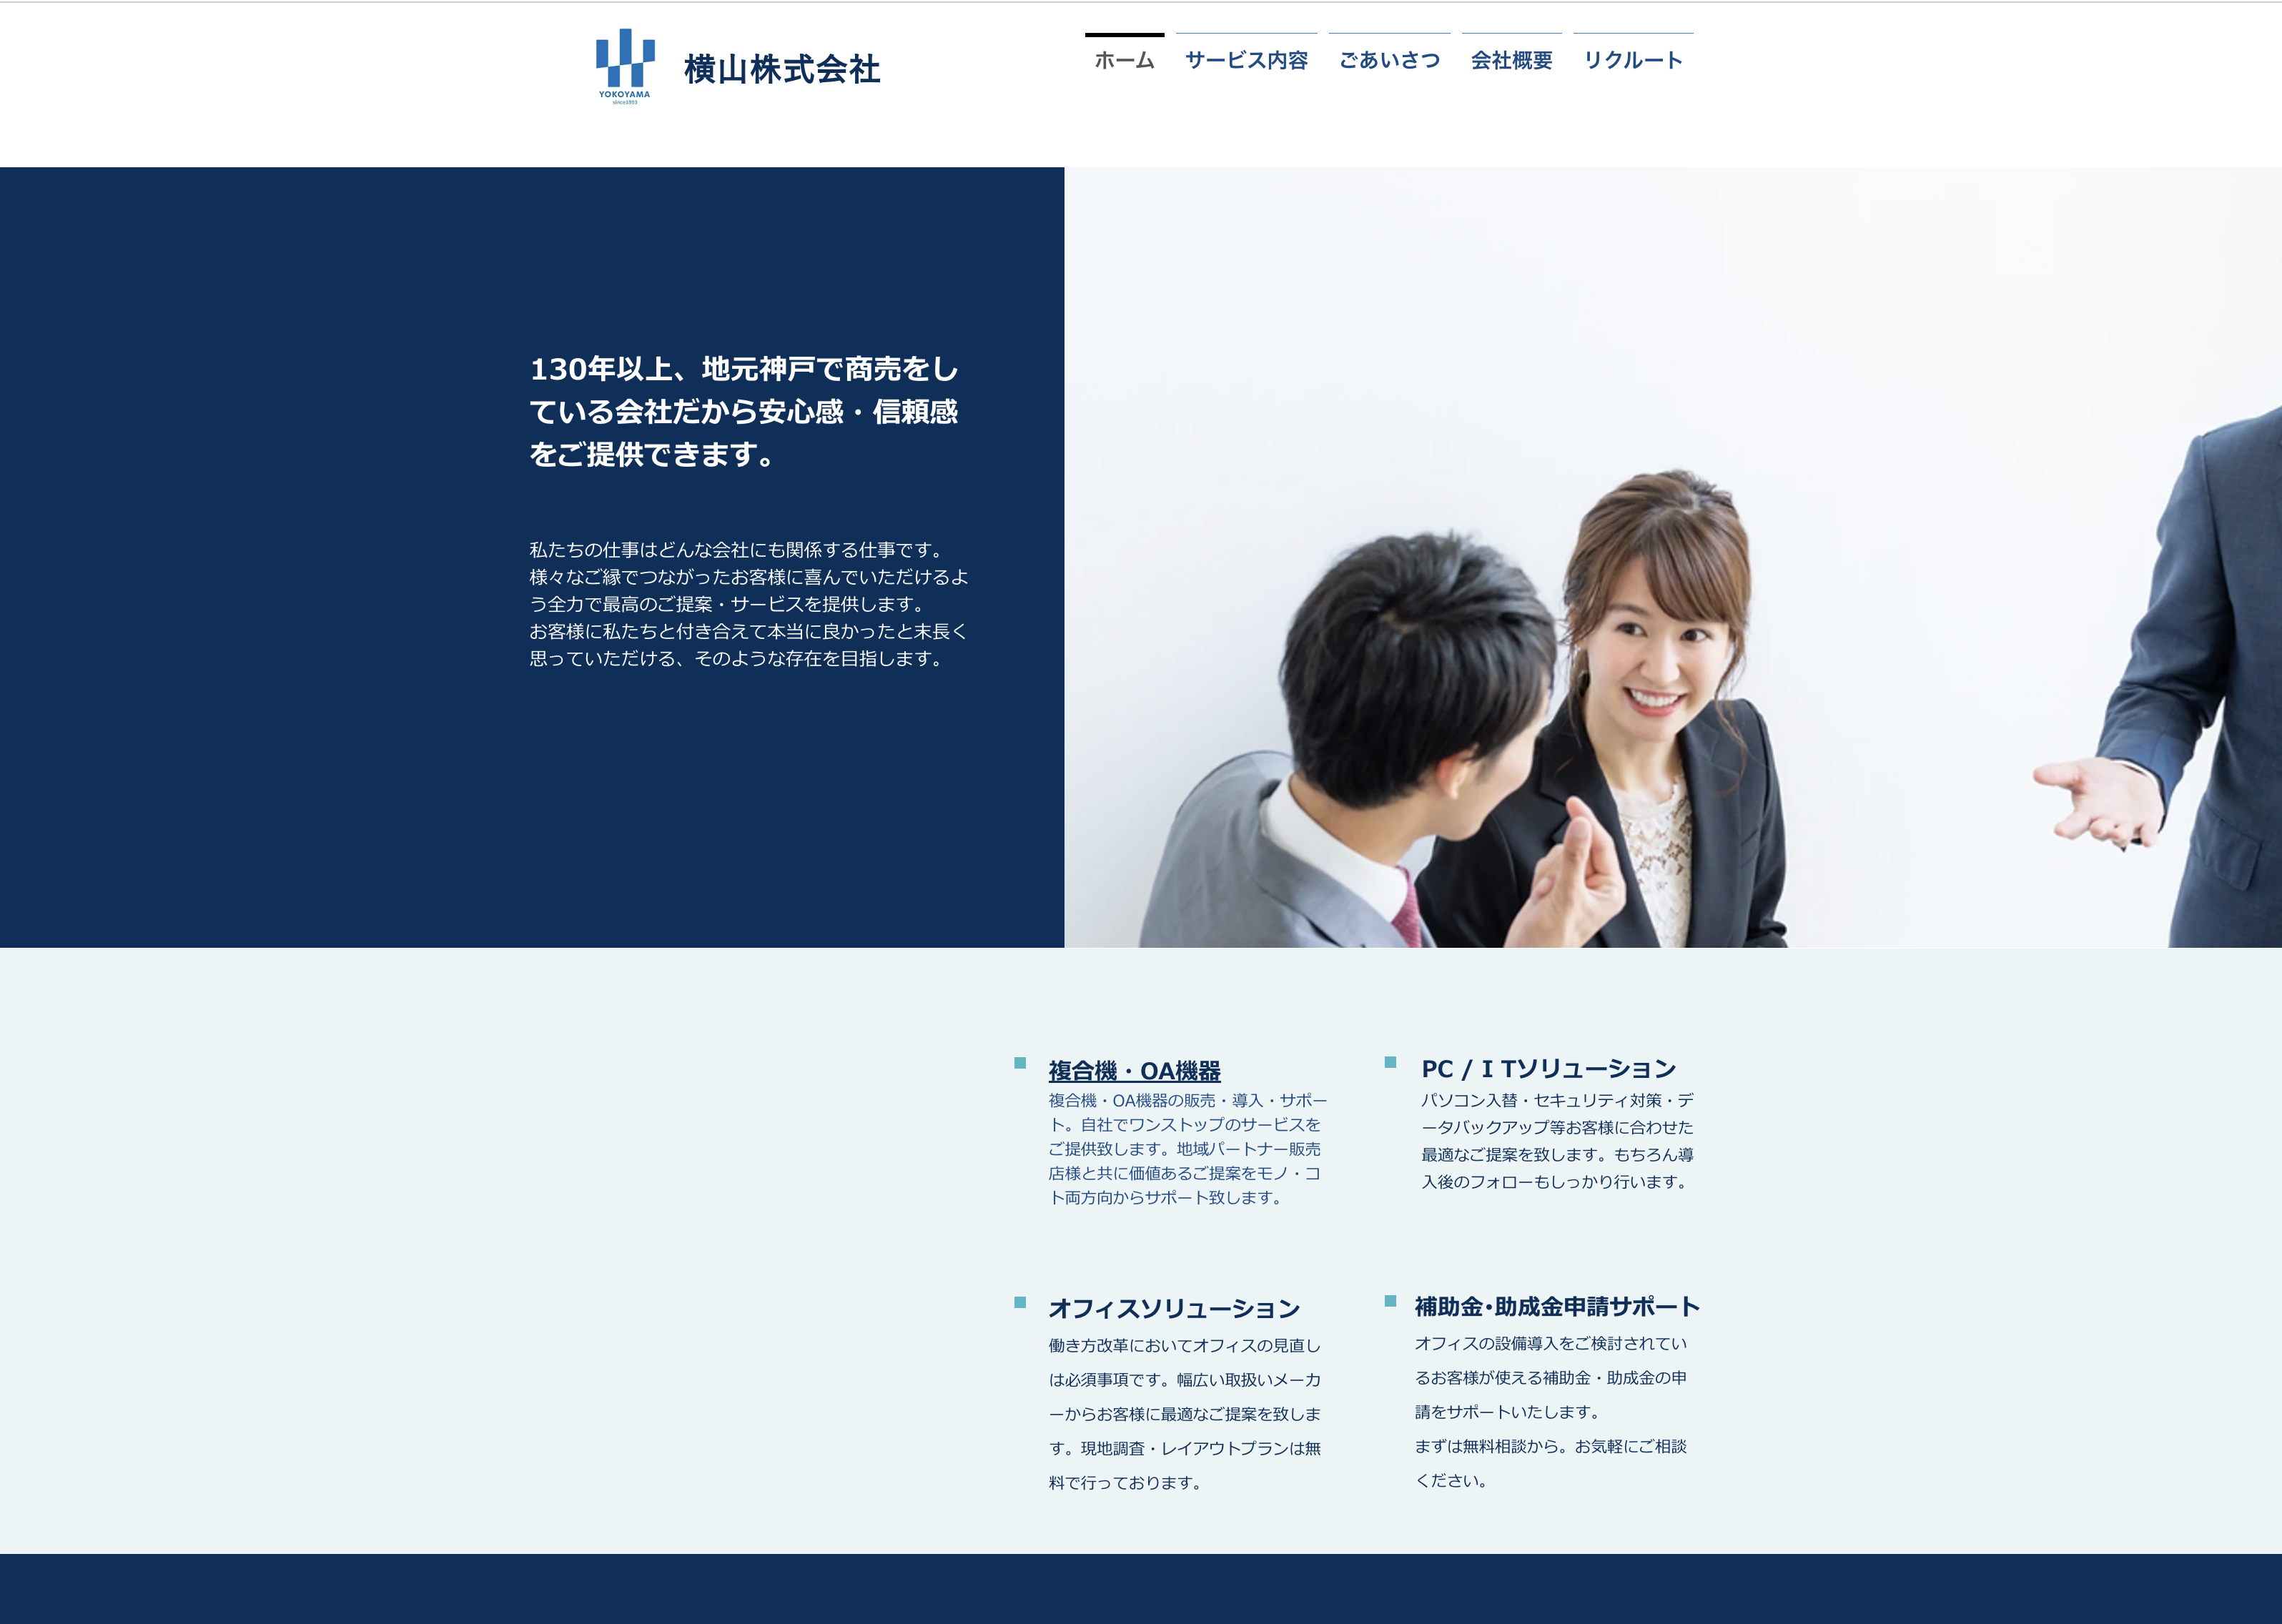 横山株式会社の横山株式会社:ホームページ制作サービス